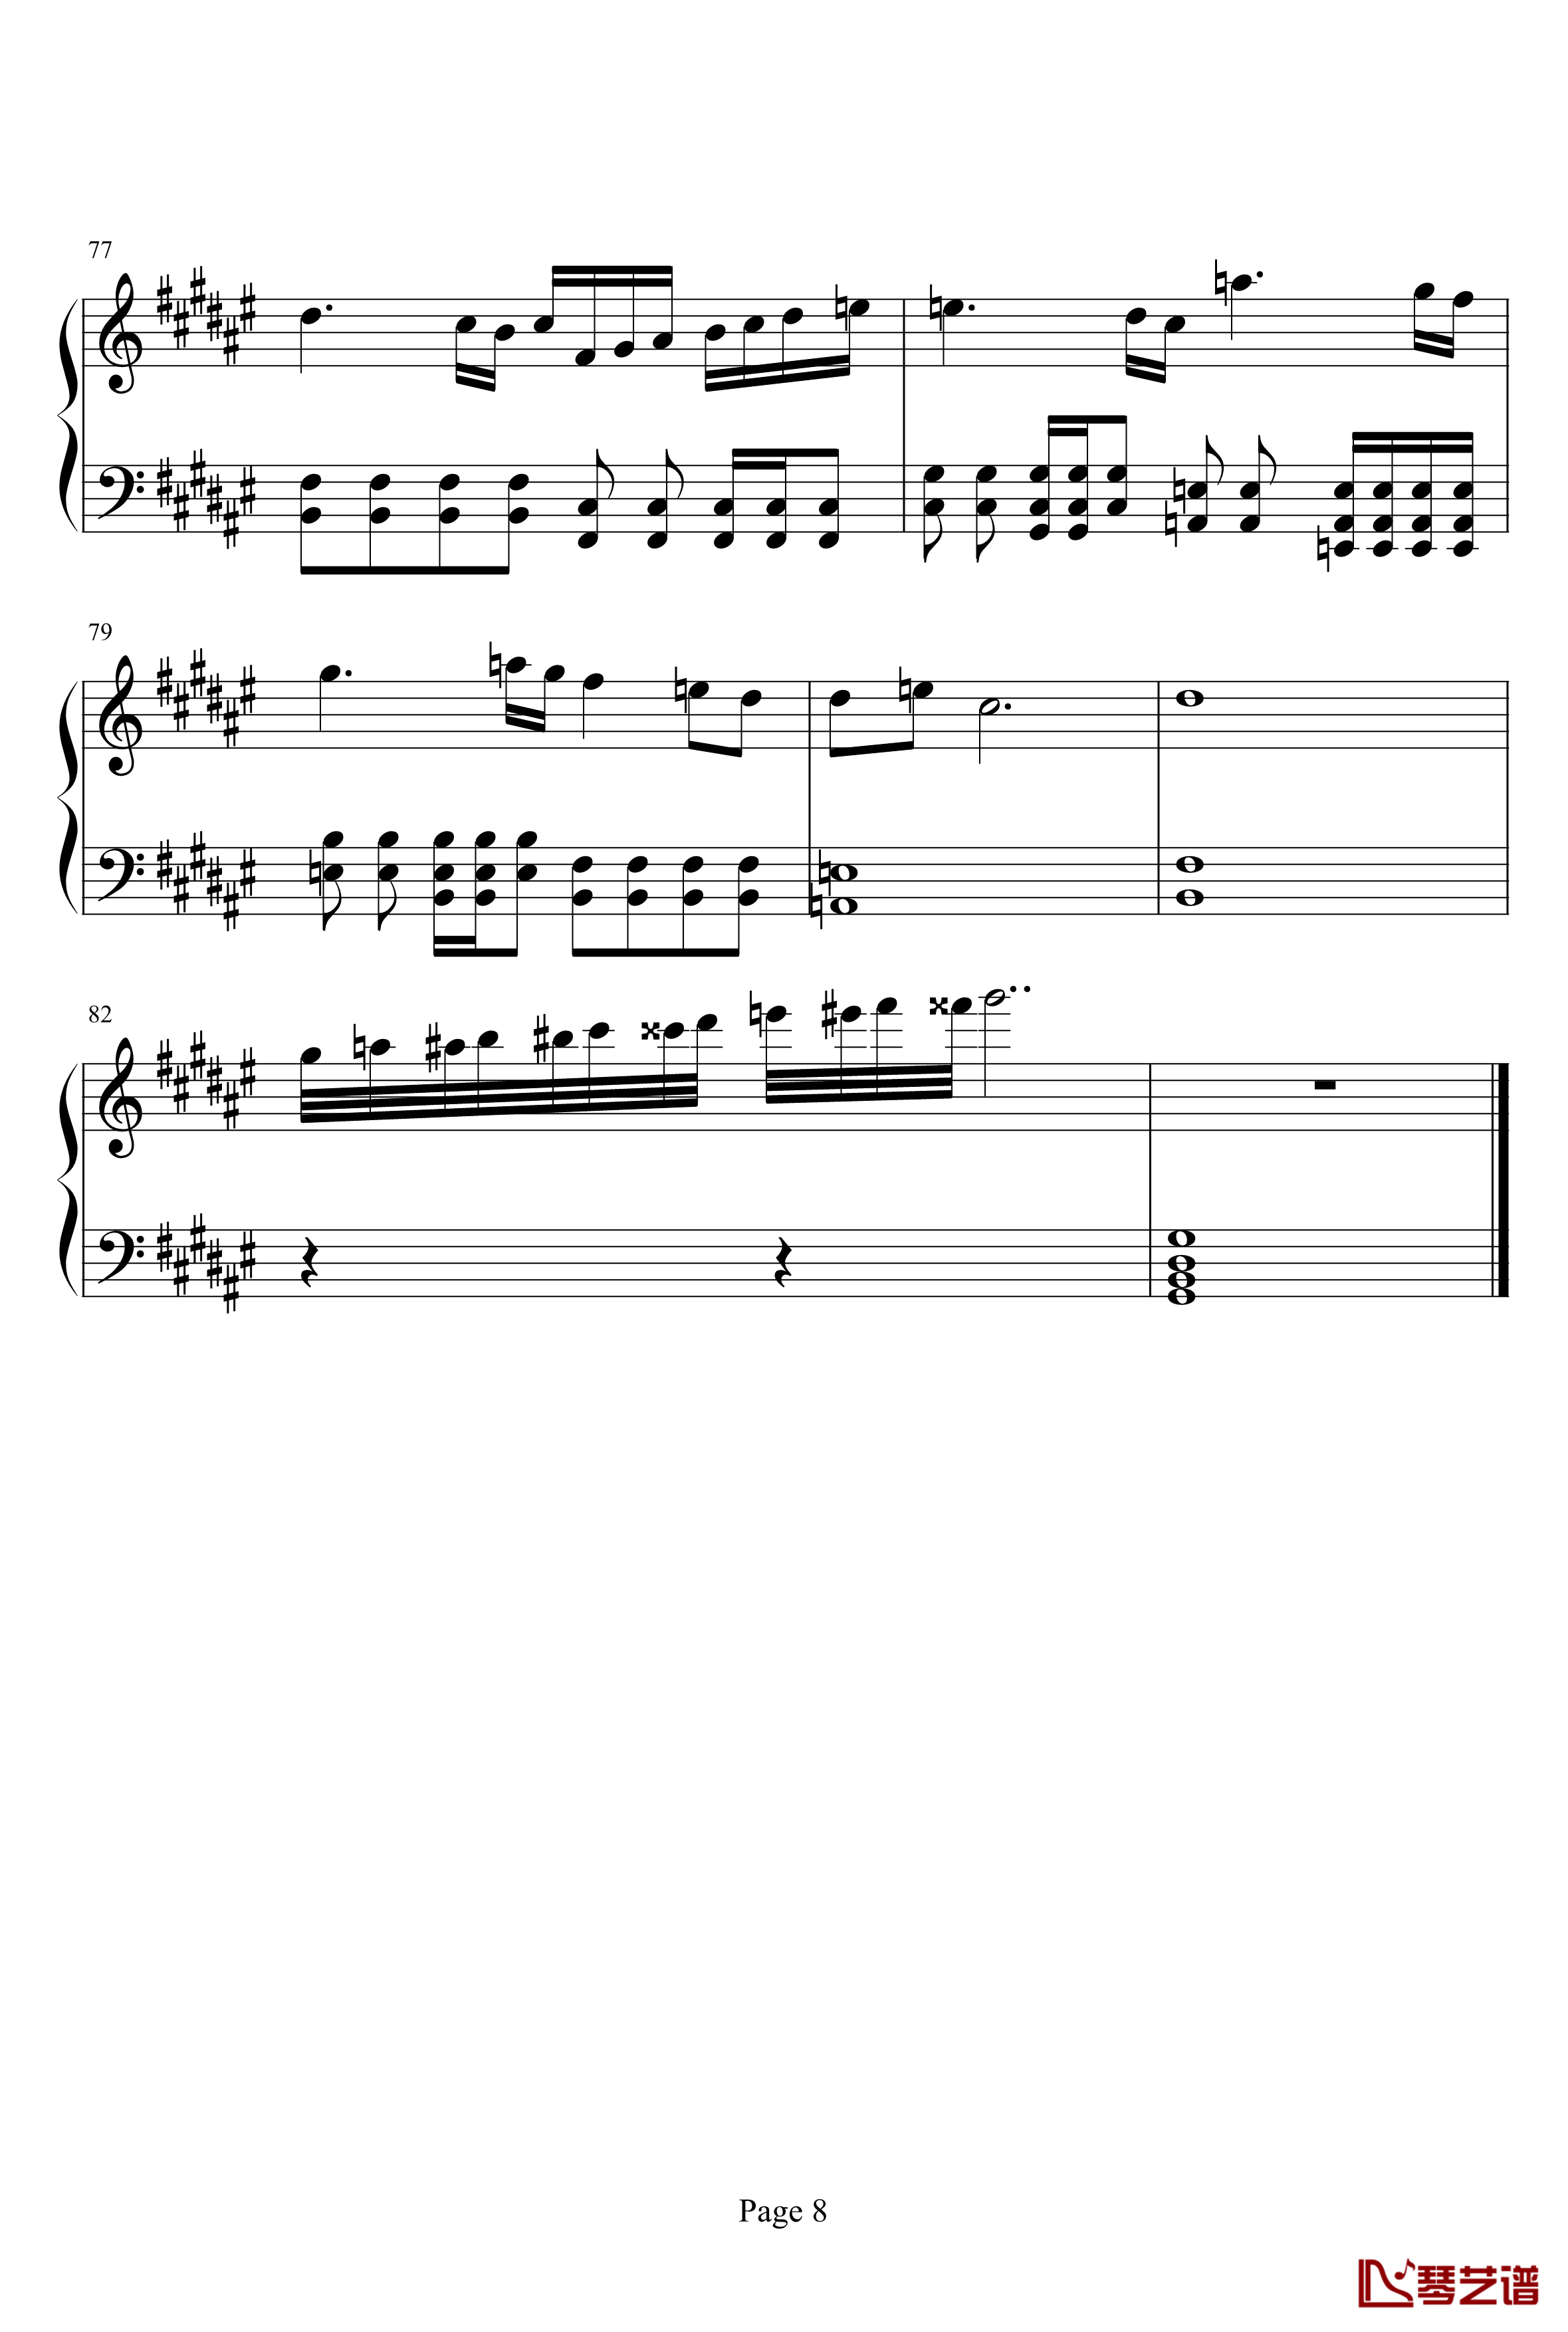 亡灵序曲钢琴谱-完整版-亡灵序曲8